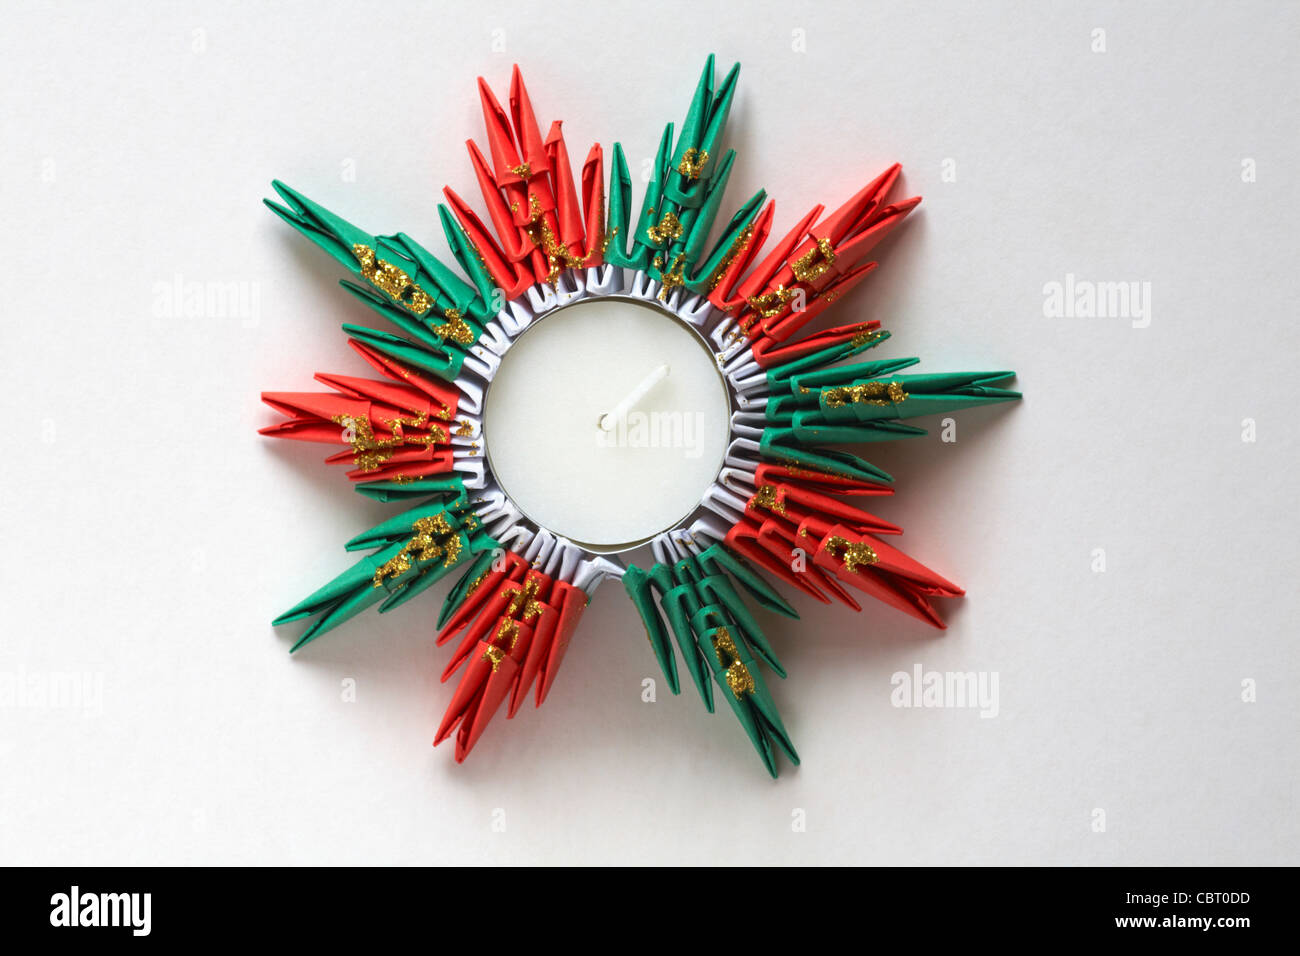 L'origami tealight candle holder pour Noël isolé sur fond blanc Banque D'Images